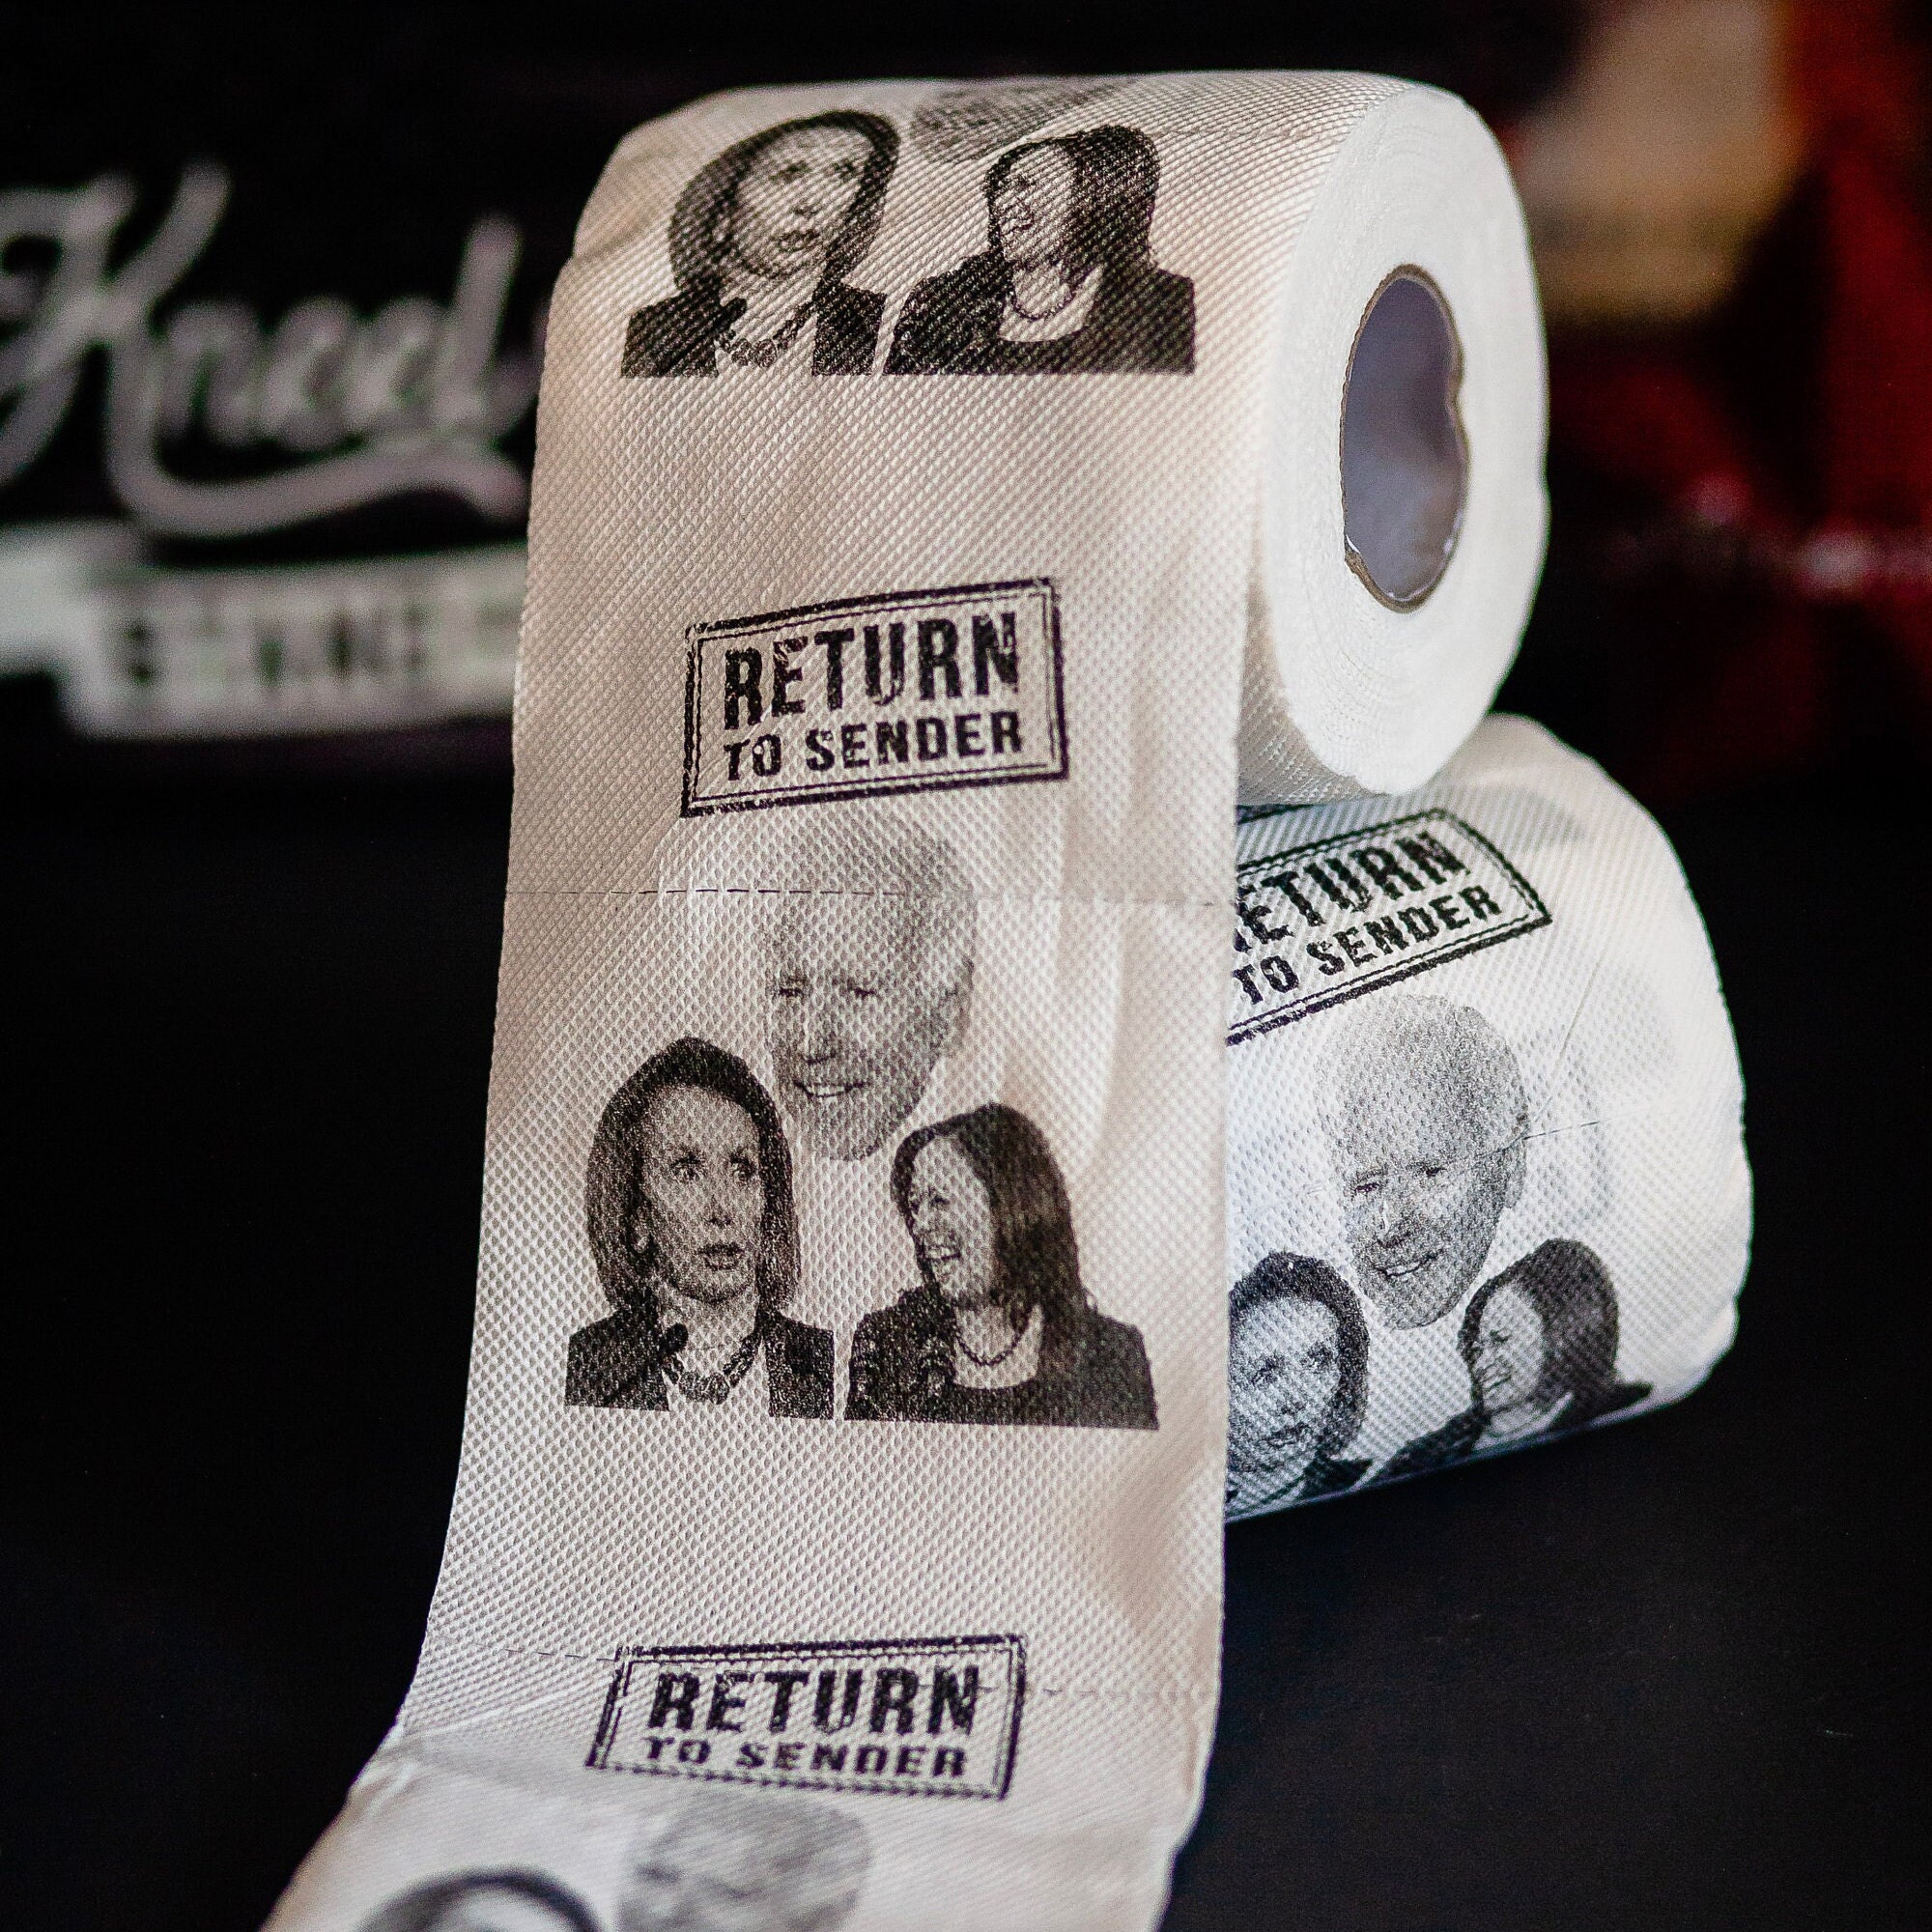 Joe Biden Toilet Paper Roll Craft